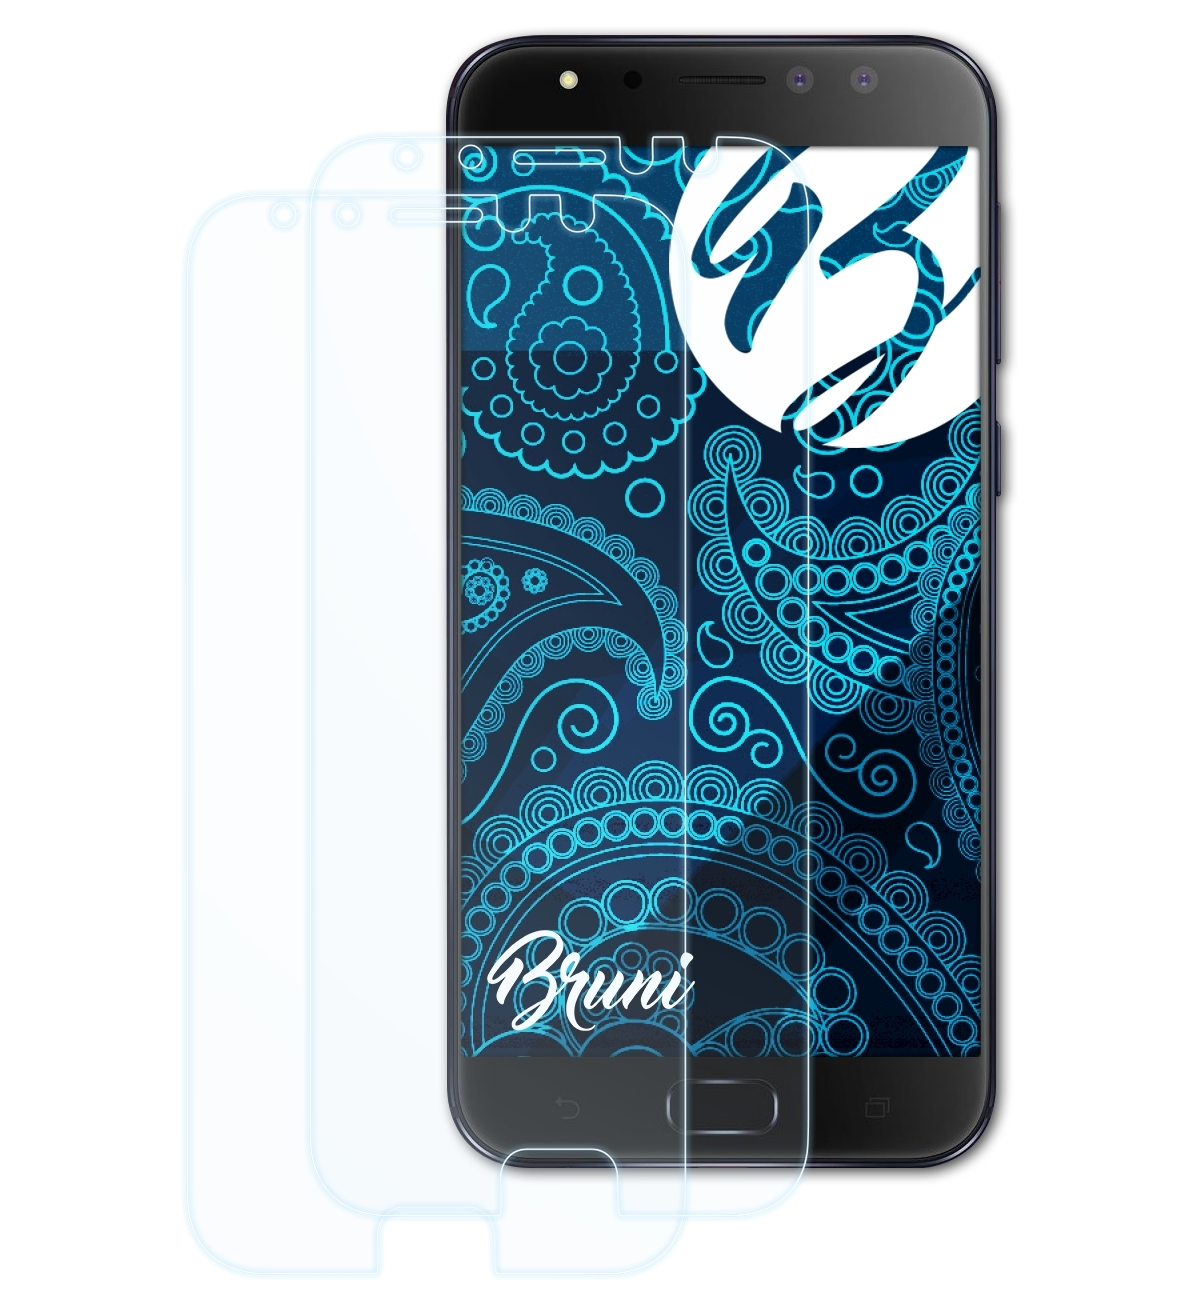 BRUNI 2x Basics-Clear Schutzfolie(für 4 Pro Asus ZenFone Selfie (ZD552KL))